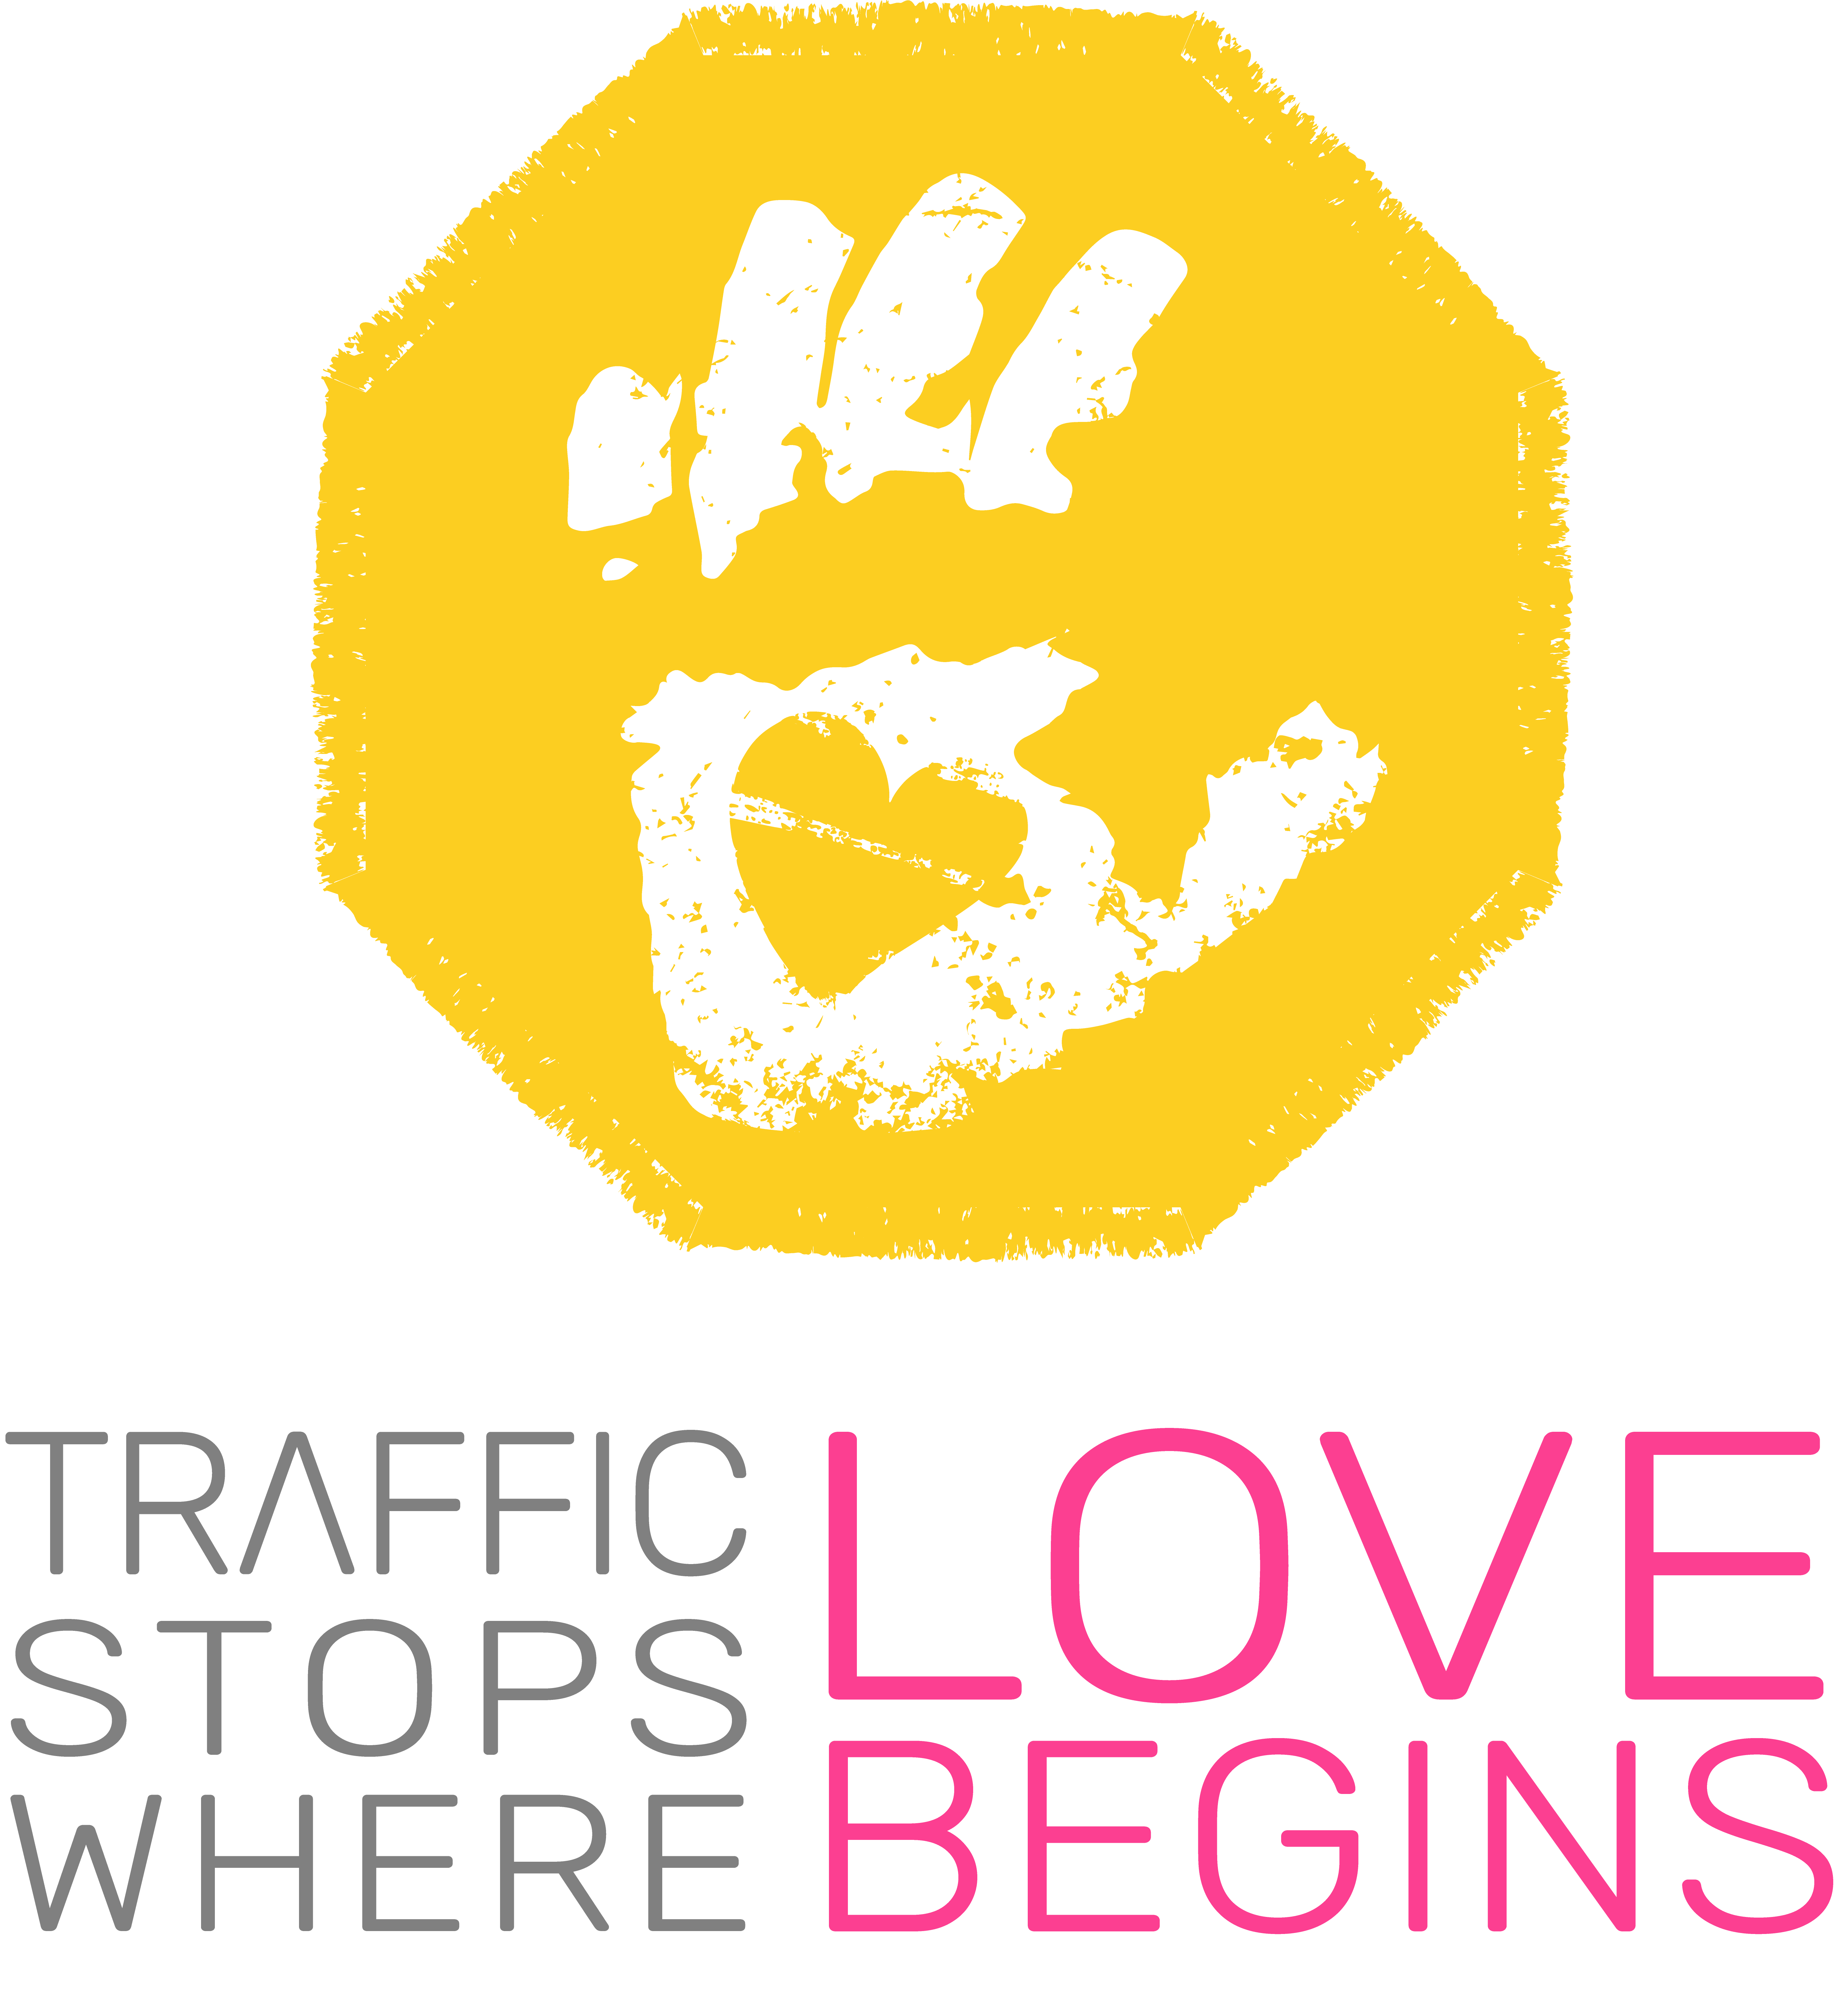 Traffic Stops Where Love Begins logo